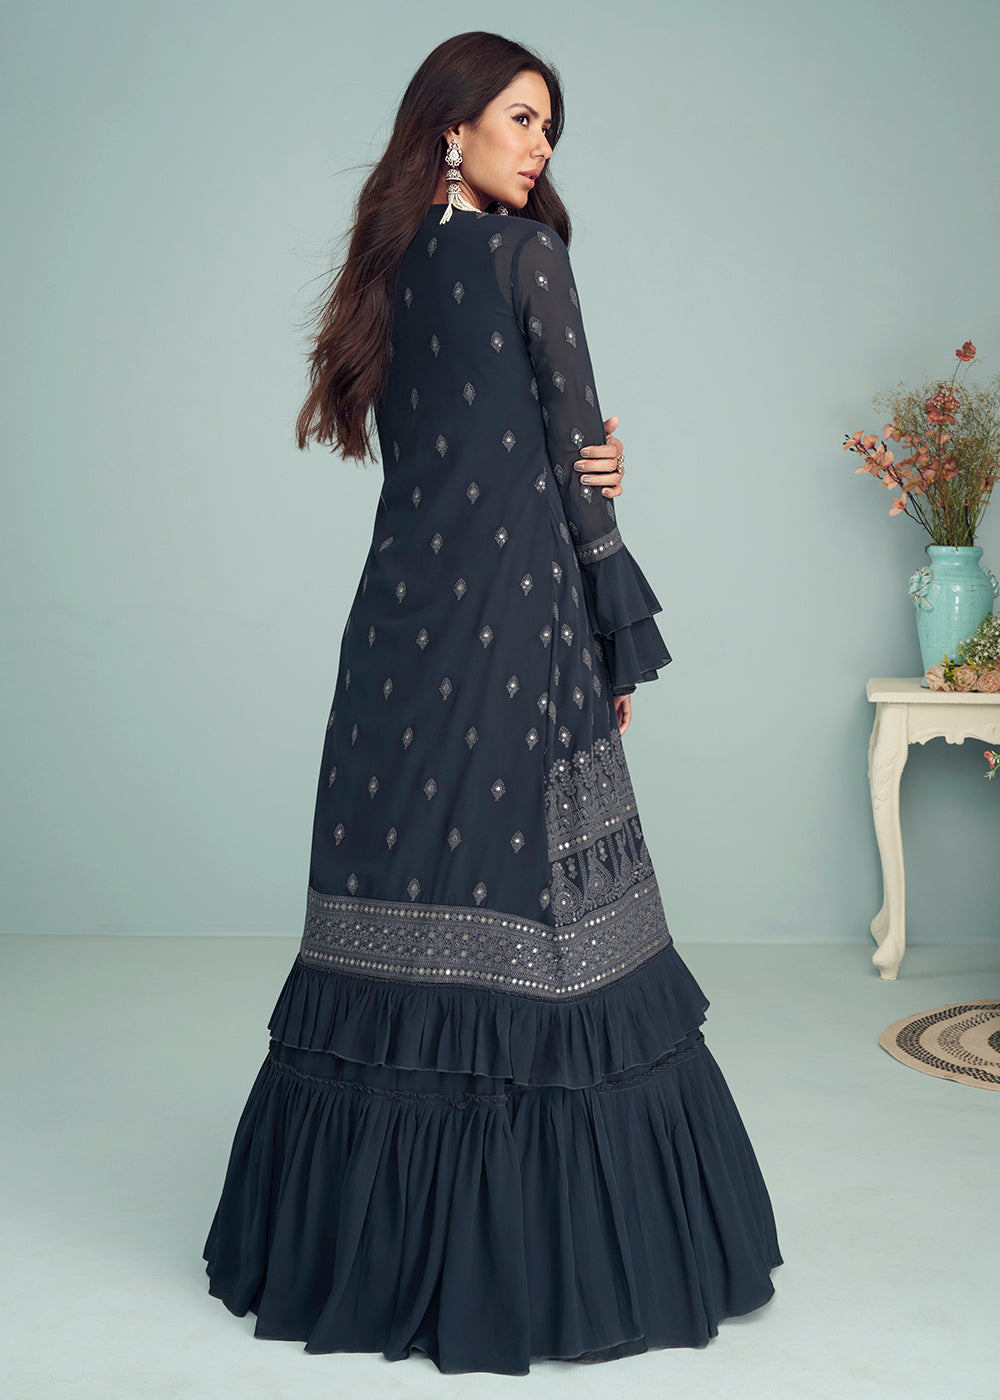 Shop Now Deep Navy Blue Georgette Embellished Wedding Anarkali Suit Online featuring Sonam Bajwa at Empress Clothing in UK. 